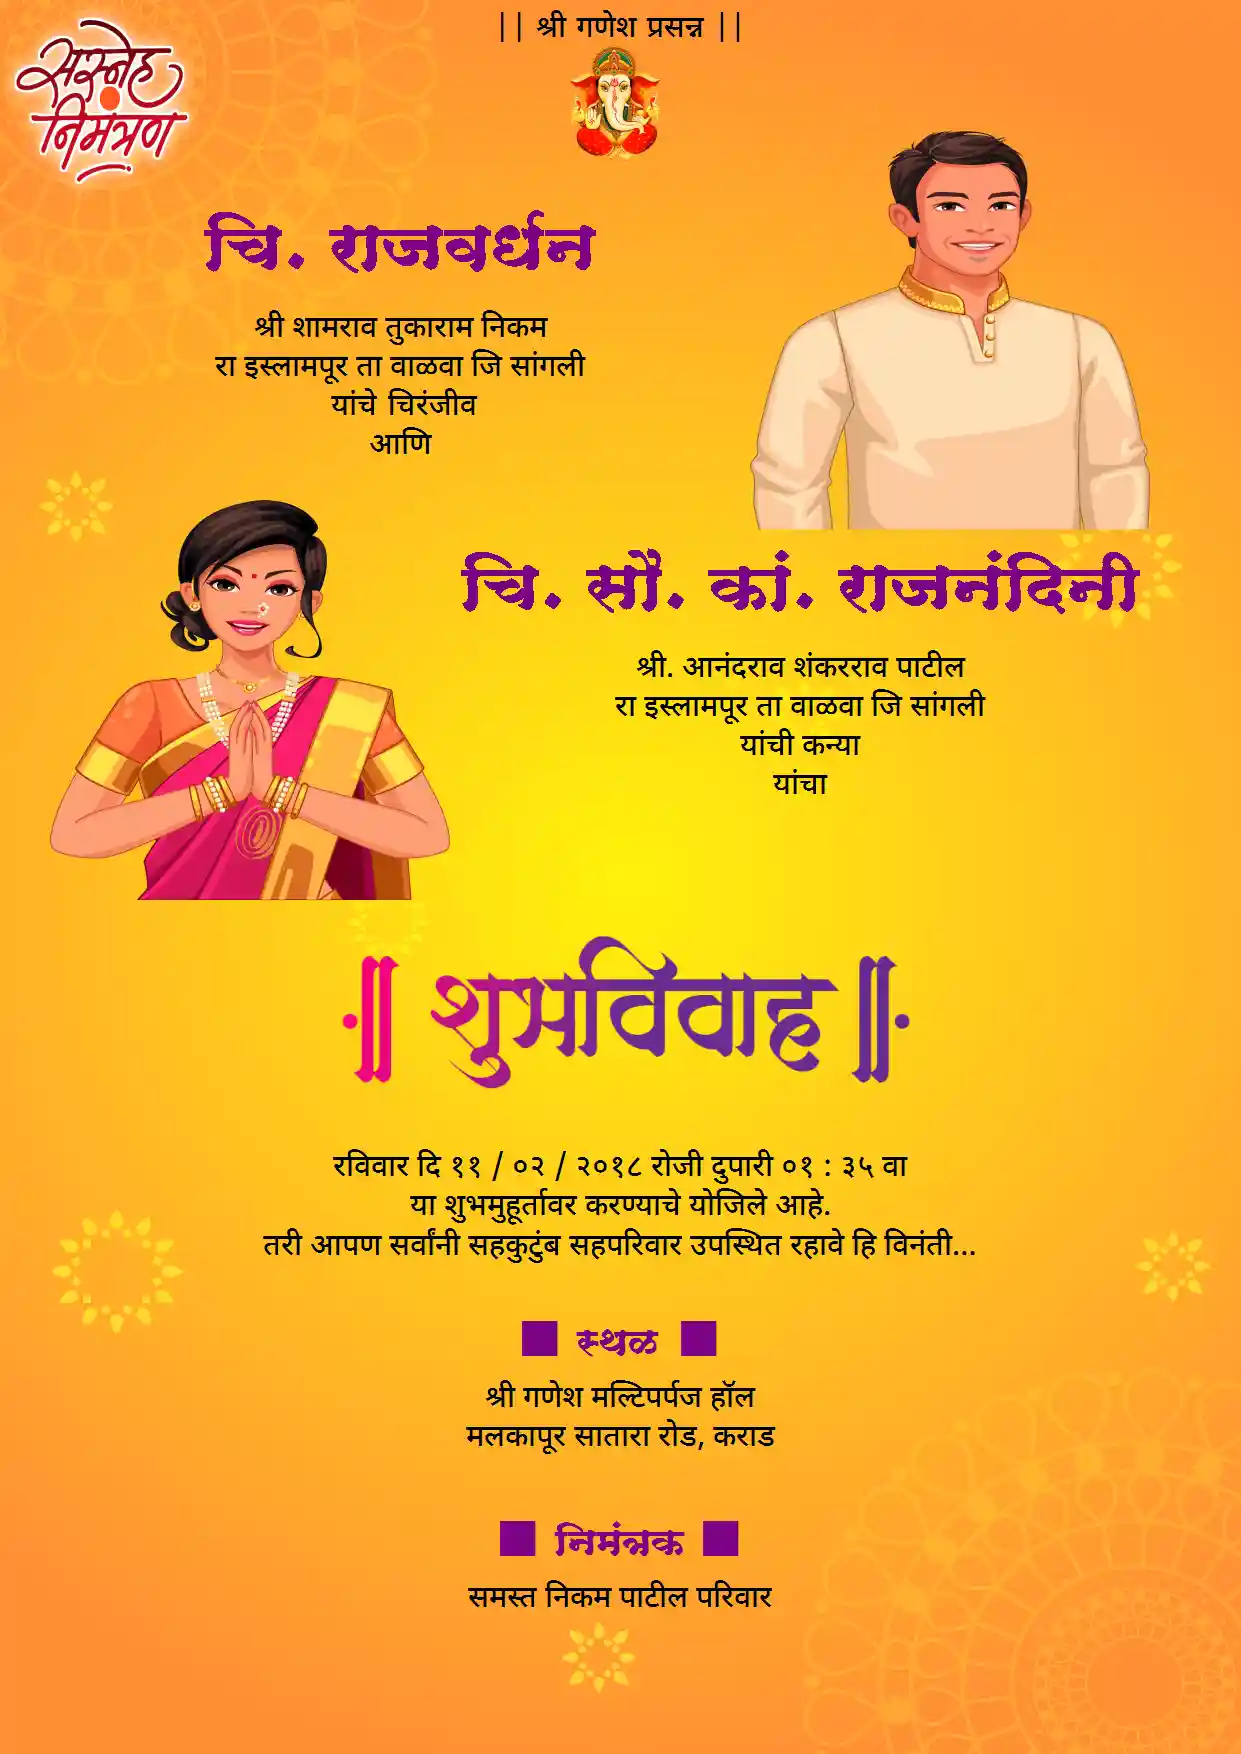 Trending Royal Wedding Invitation Card Marathi With Photo